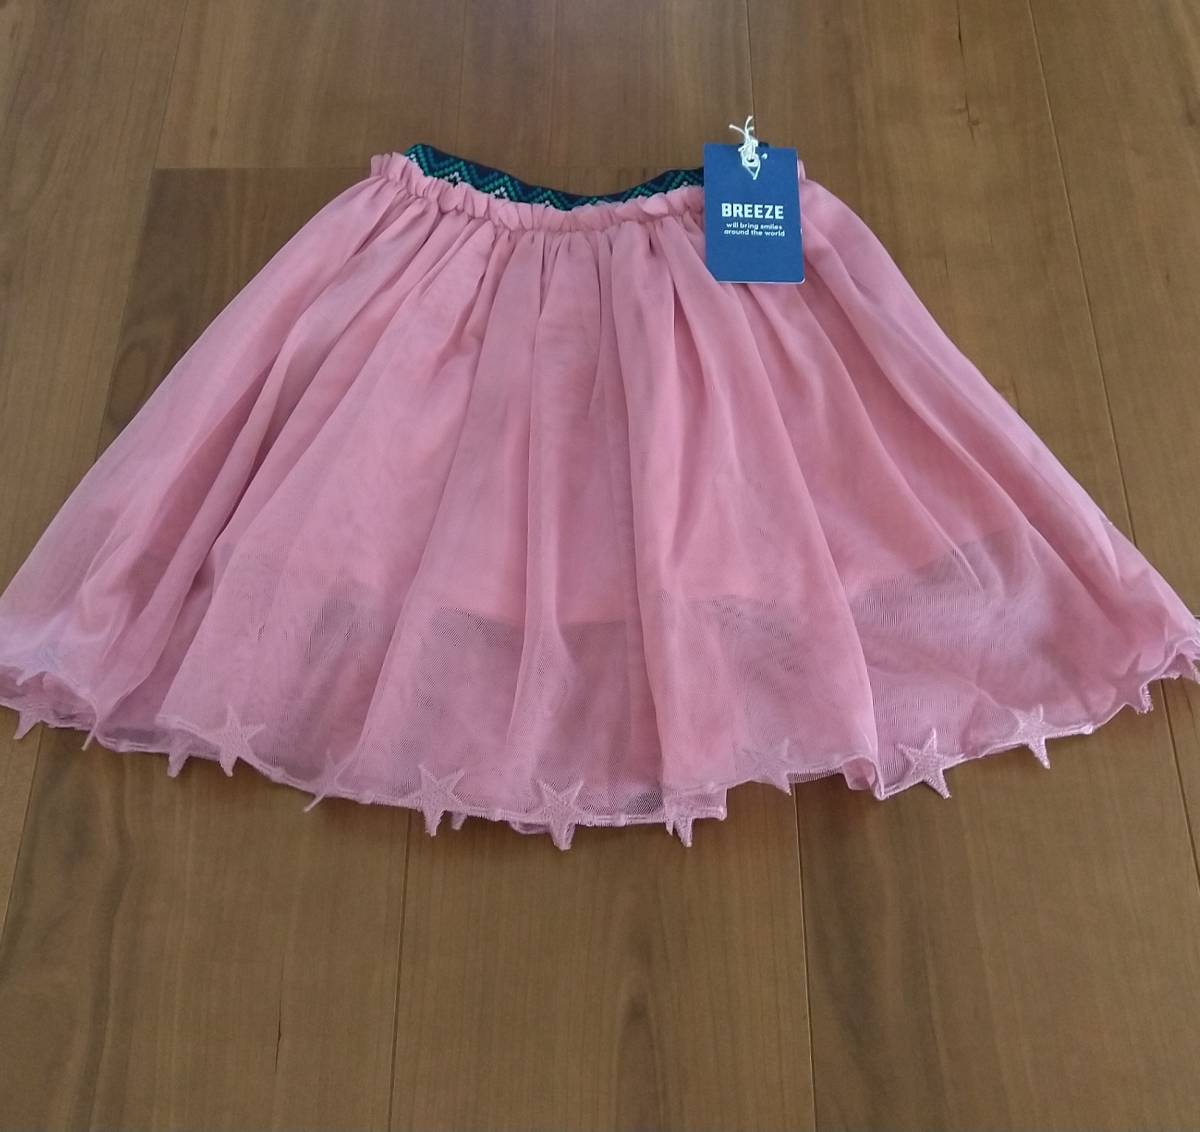 BREEZE ребенок одежда baby Kids девочка юбка chu-ru симпатичный мягкий розовый 90 не использовался 